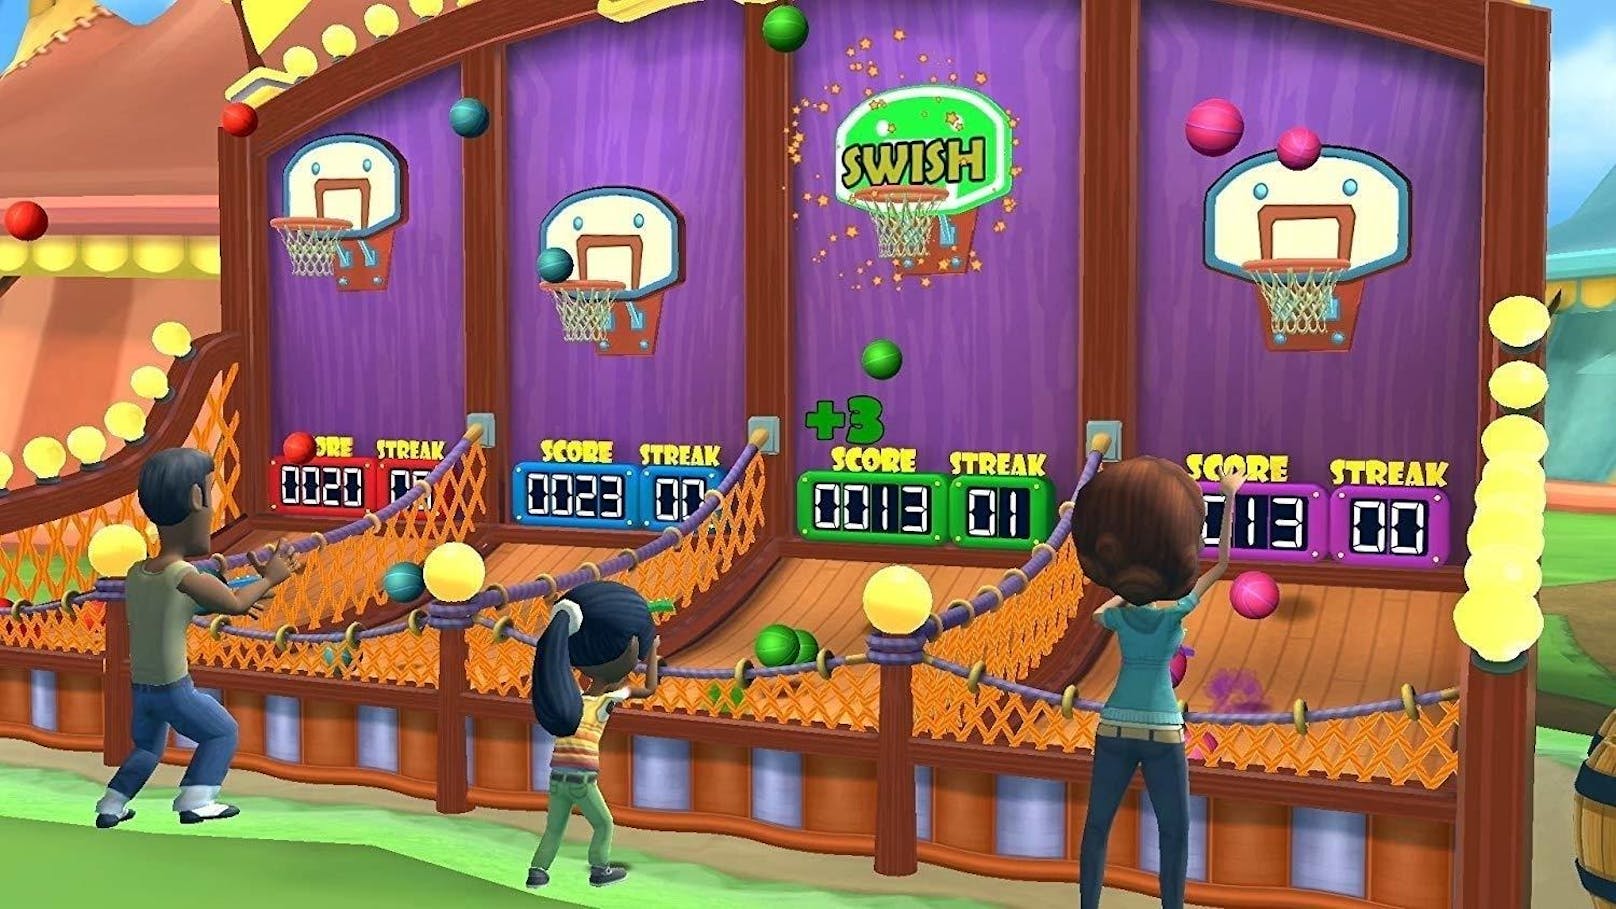 Im Grunde wirkt Carnival Games wie ein Wii-Game mit höherer Auflösung, vor allem auch dank der Bewegungssteuerung mittels Joy-Con-Controllern. Das ist aber nicht schlimm, denn was damals auch für Kinder und Großeltern zugänglich war, ist es auch heute noch. Allzu viel Tiefe sollte man sich wie in den meisten Games dieses Genres nicht erwarten, für einige entspannte Nachmittage ist Carnival Games aber bestens geeignet.